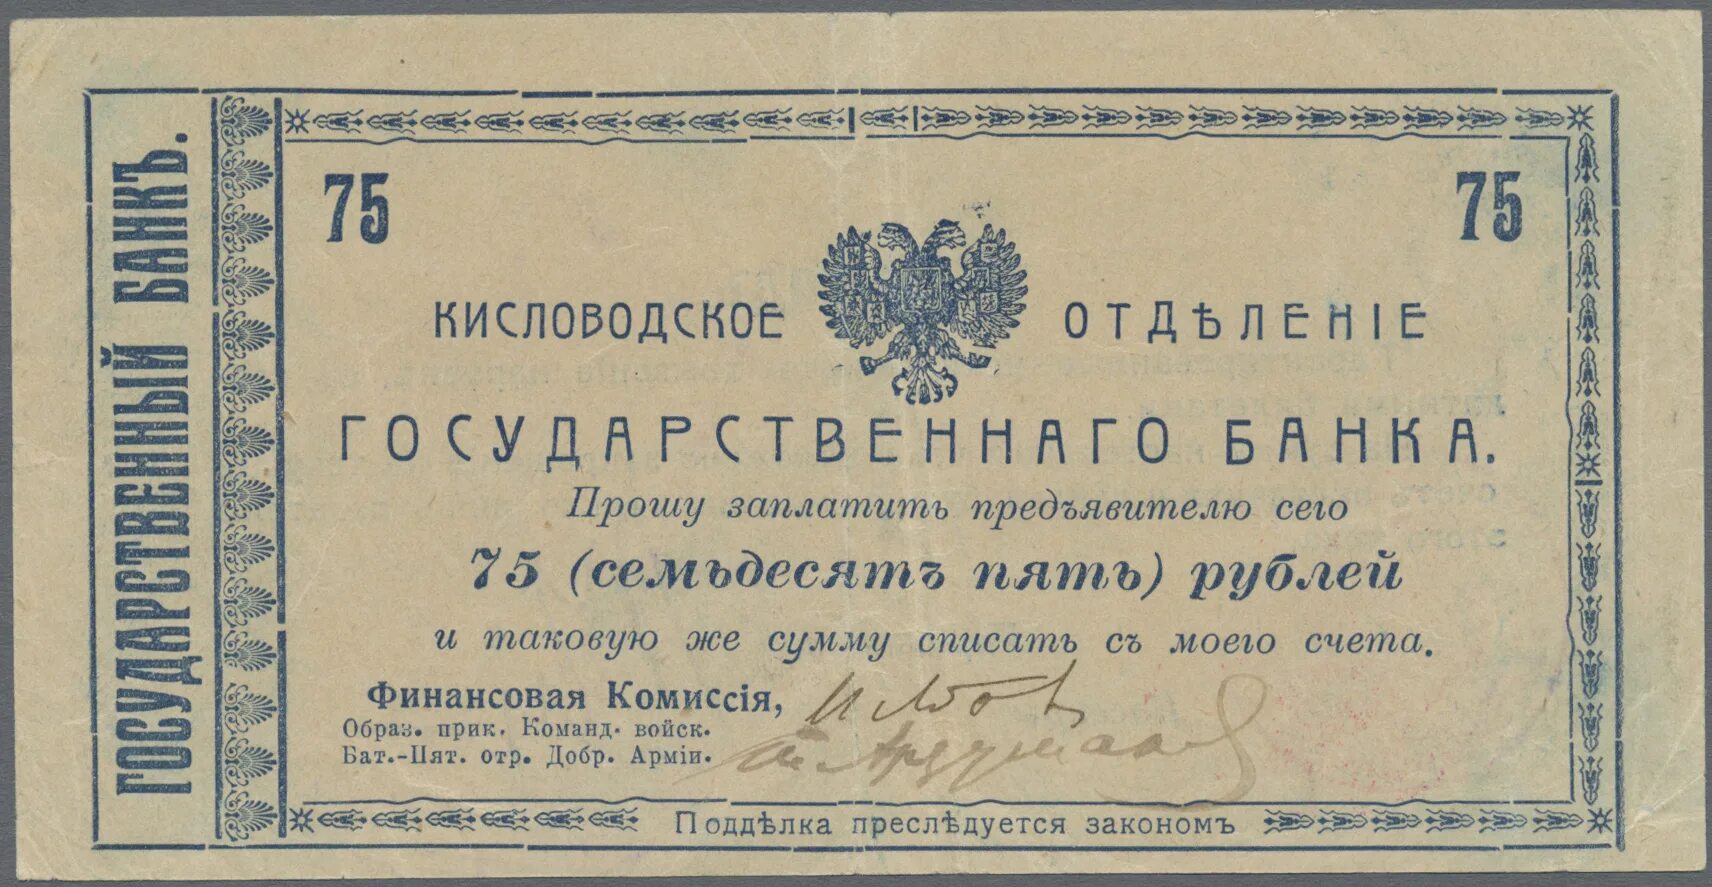 75 рублей 8. 75 Рублей 1769 года. Купюра 75 рублей. Ассигнация 75 рублей. Ассигнация 25 рублей.